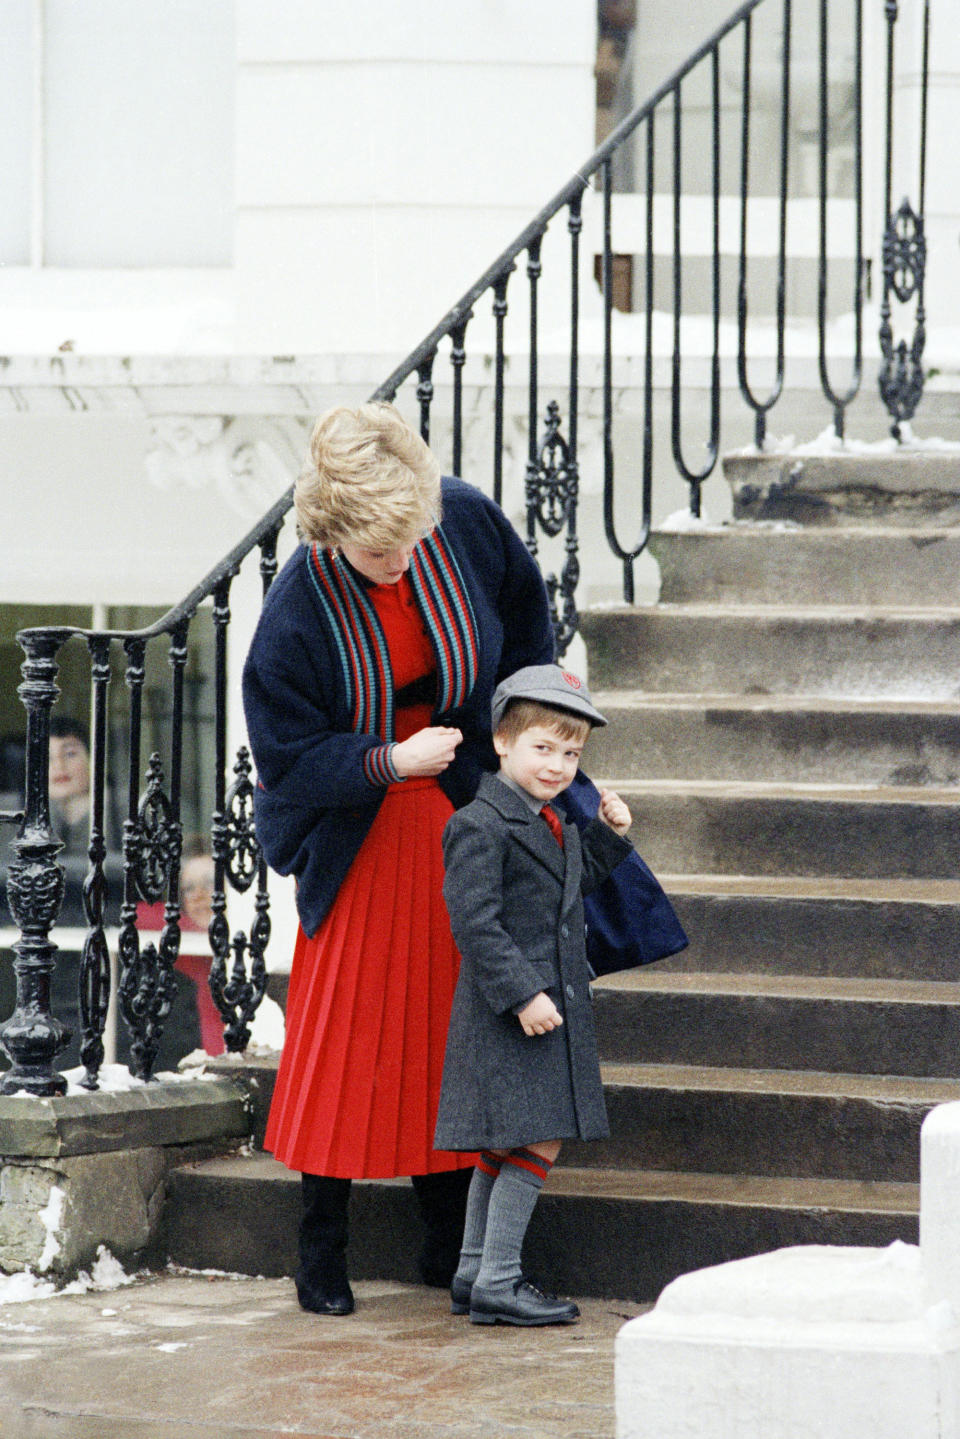 ARCHIVO - El príncipe Guillermo sostiene la mano de su madre, la princesa Diana, al llegar el primer día a su nueva escuela, Wetherby School, el 15 de enero de 1987 en Londres. (Foto AP, archivo)